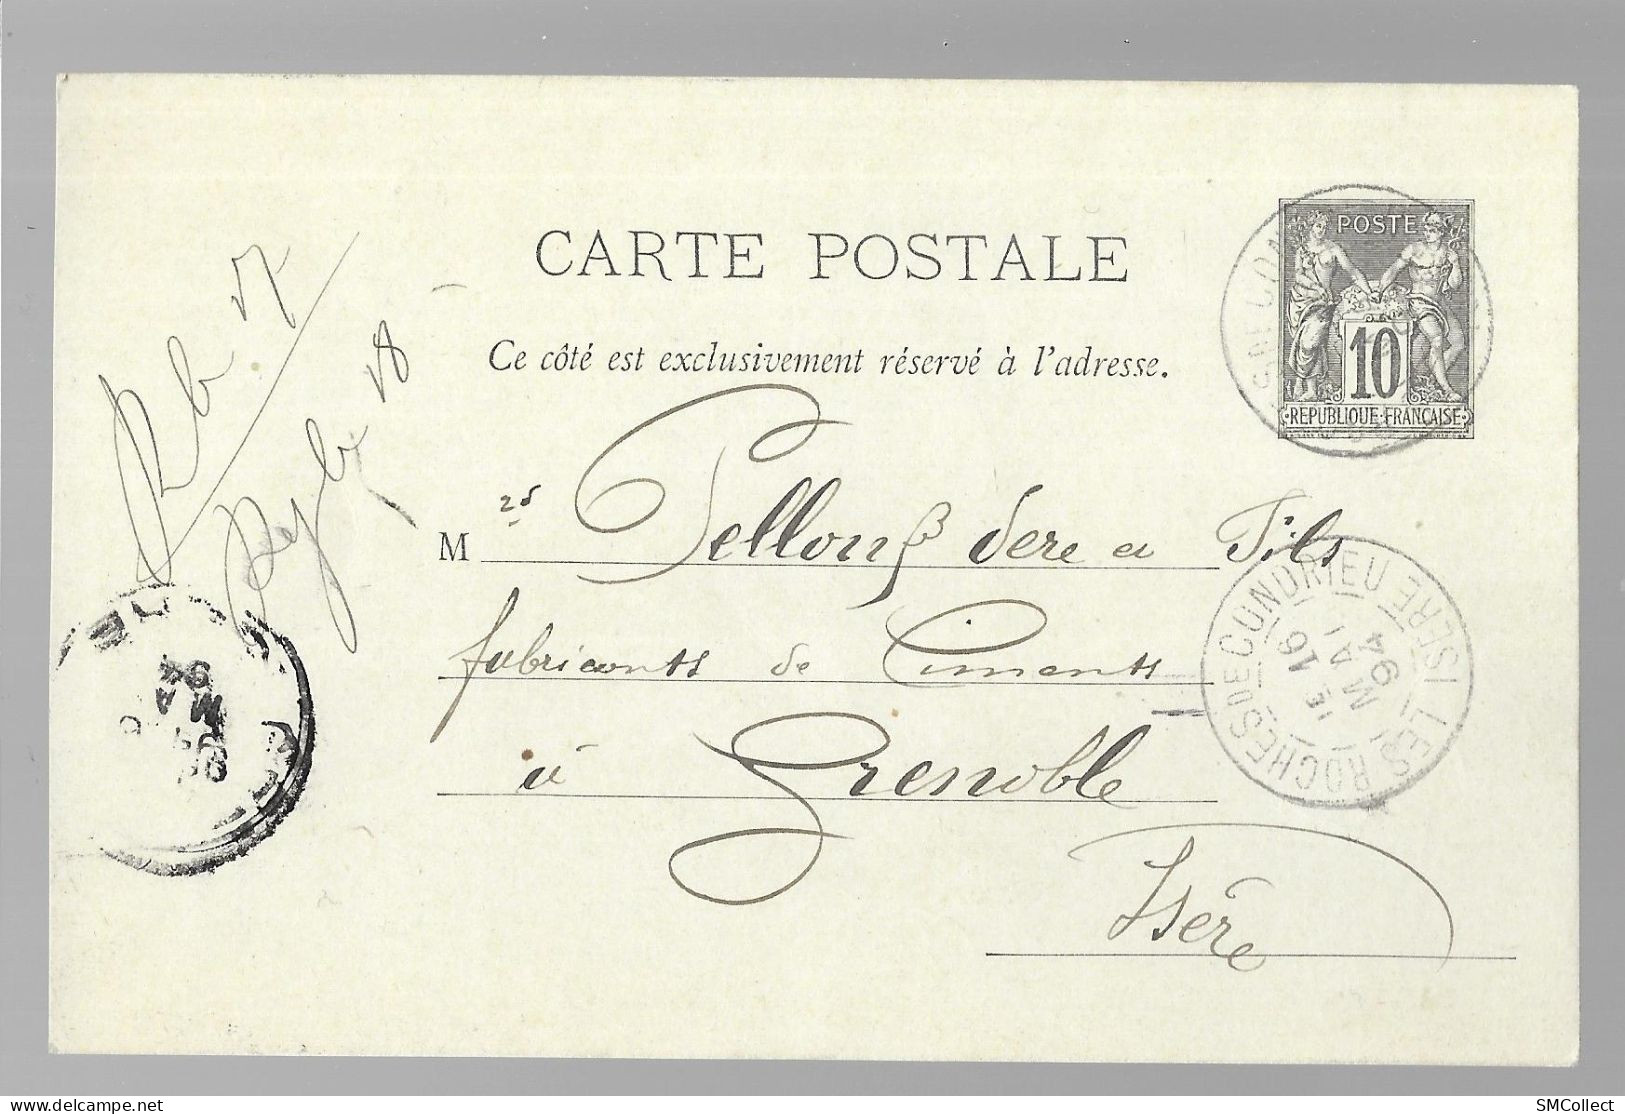 Entier Postal, Sage 10 Centimes Noir Voyagé En Mai 1894, Des Roches De Condrieu Vers Grenoble (13575) - Standard Postcards & Stamped On Demand (before 1995)